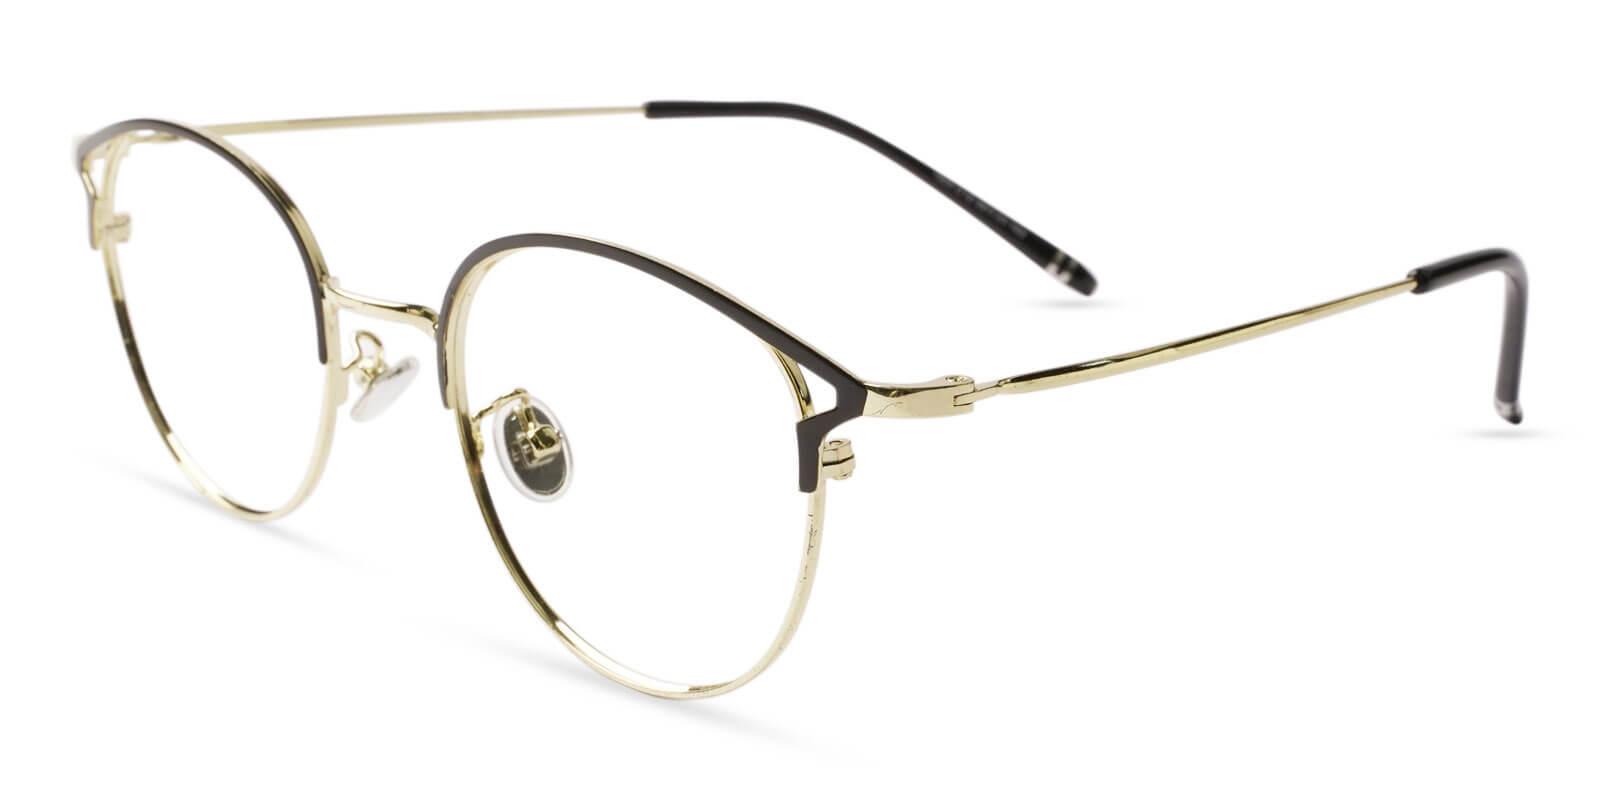 Haiti Gold Metal Eyeglasses , NosePads Frames from ABBE Glasses